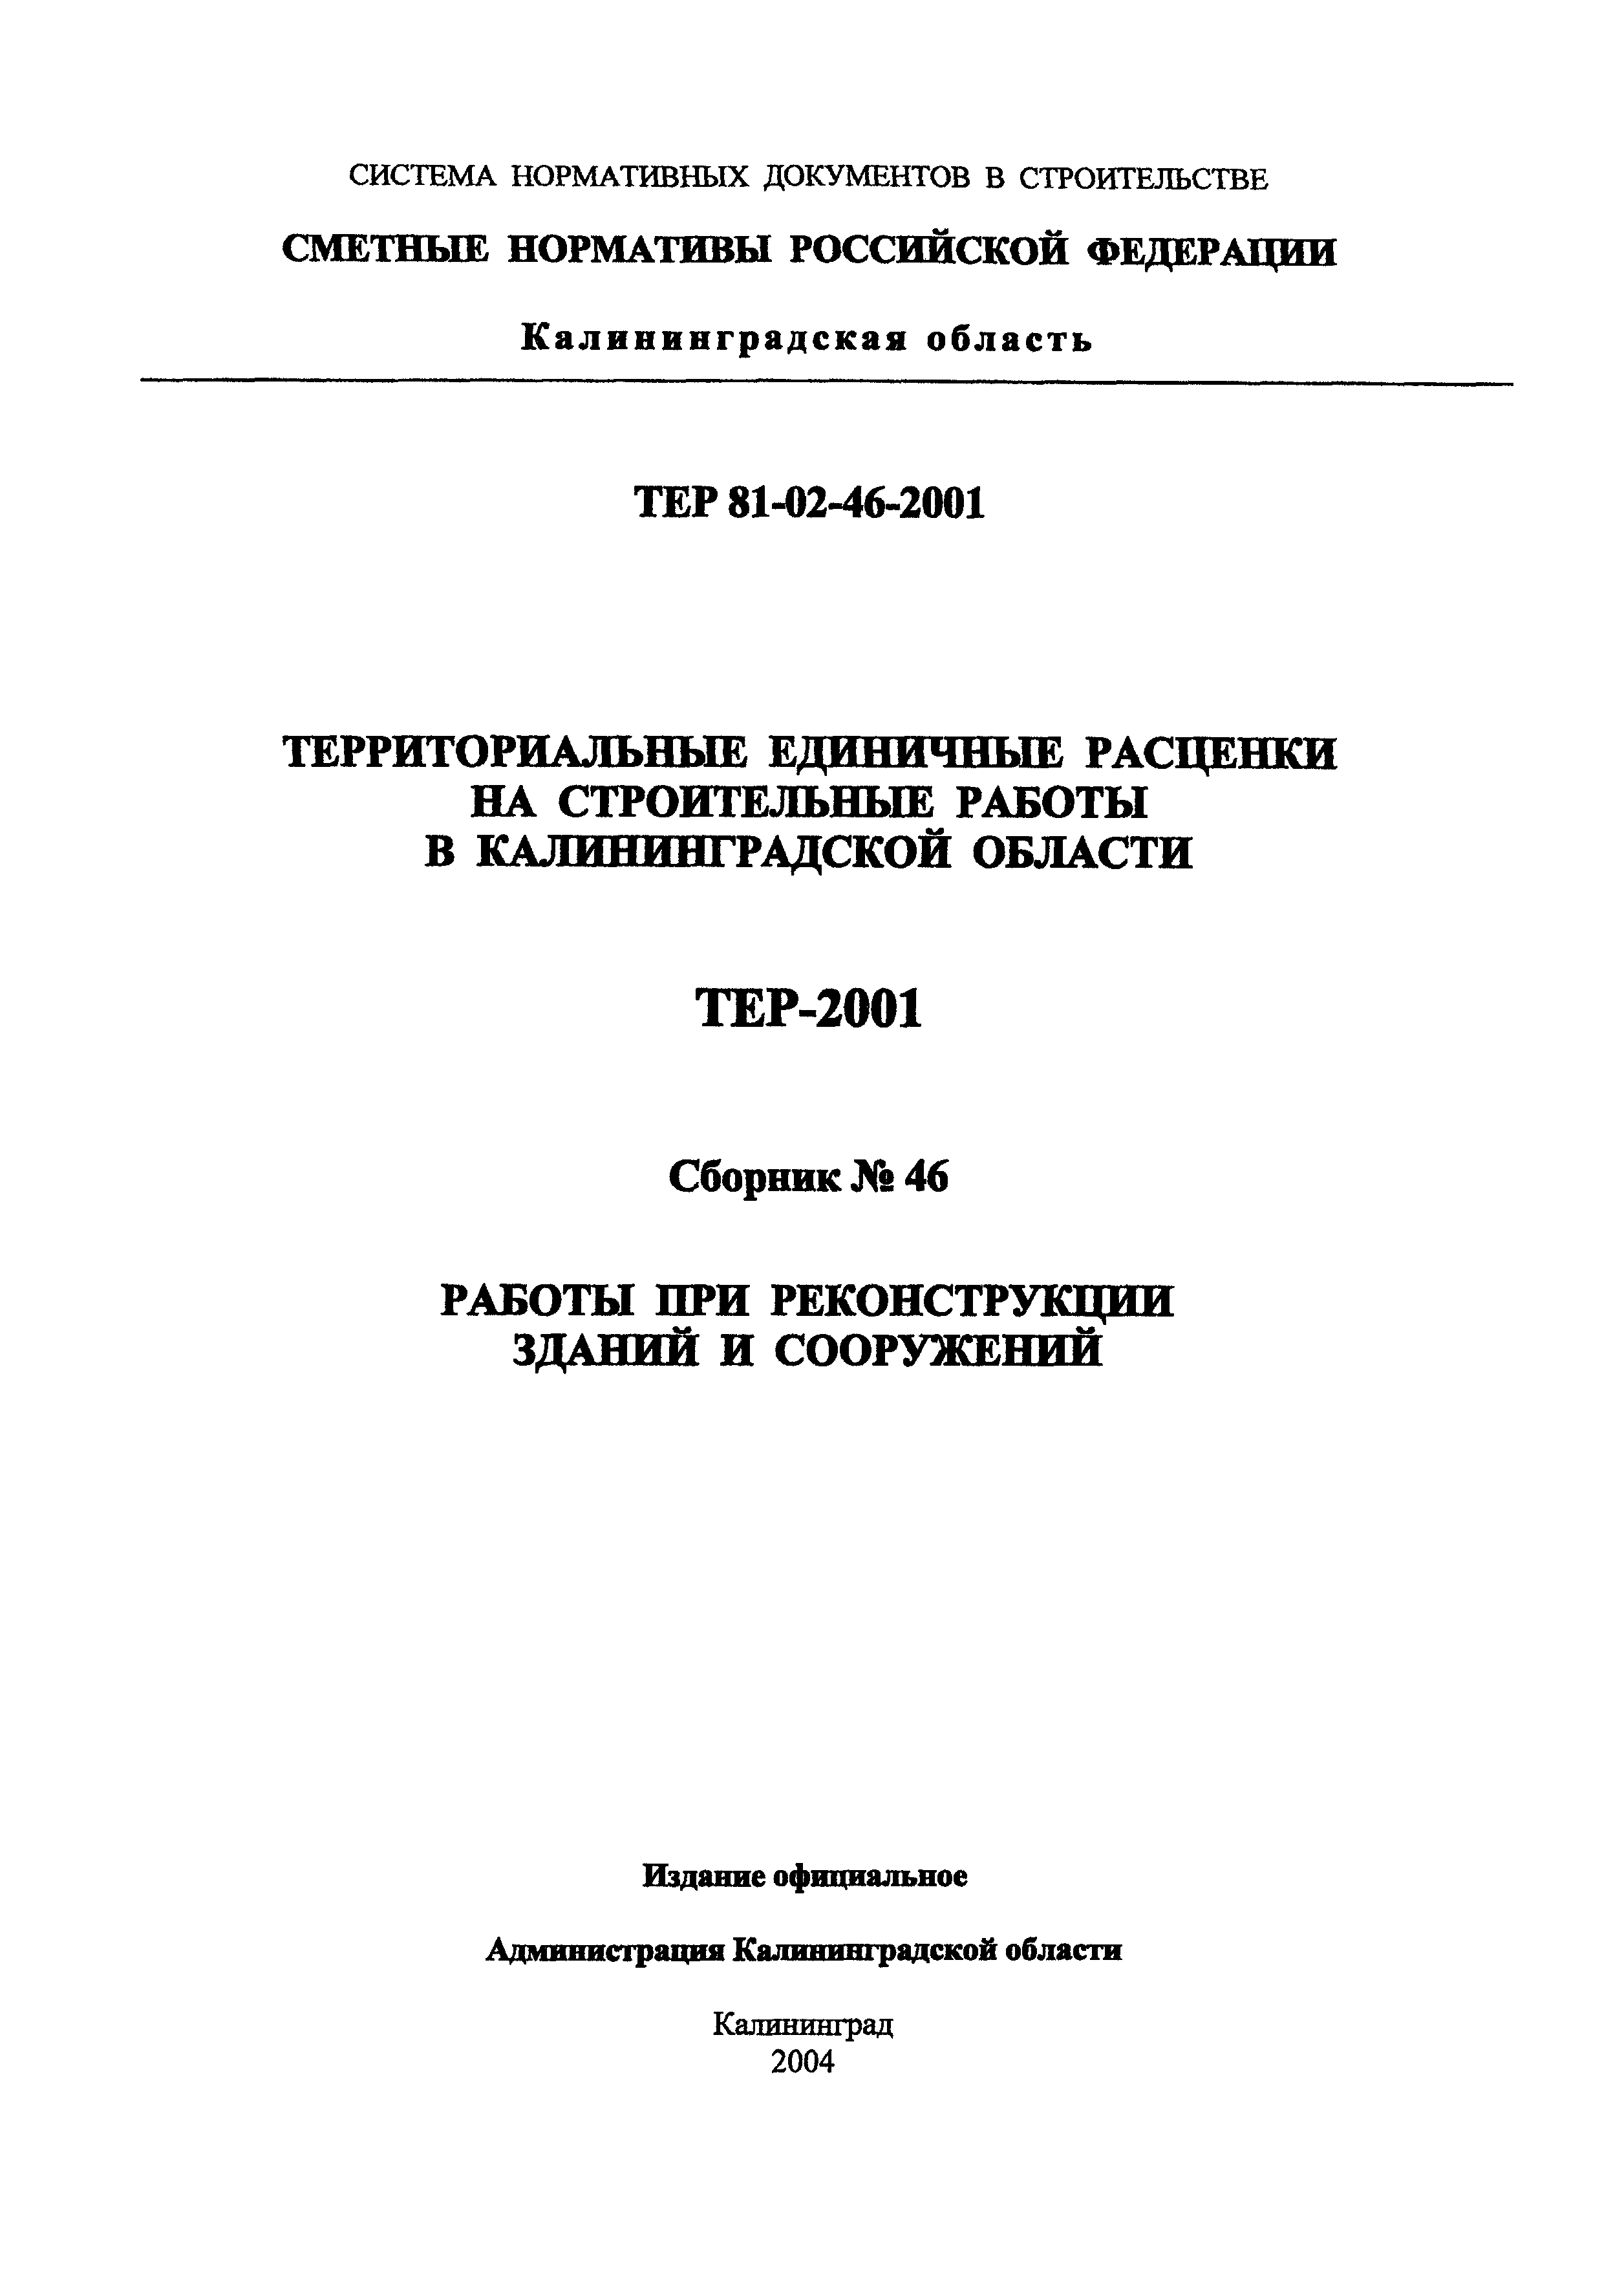 ТЕР Калининградская область 2001-46